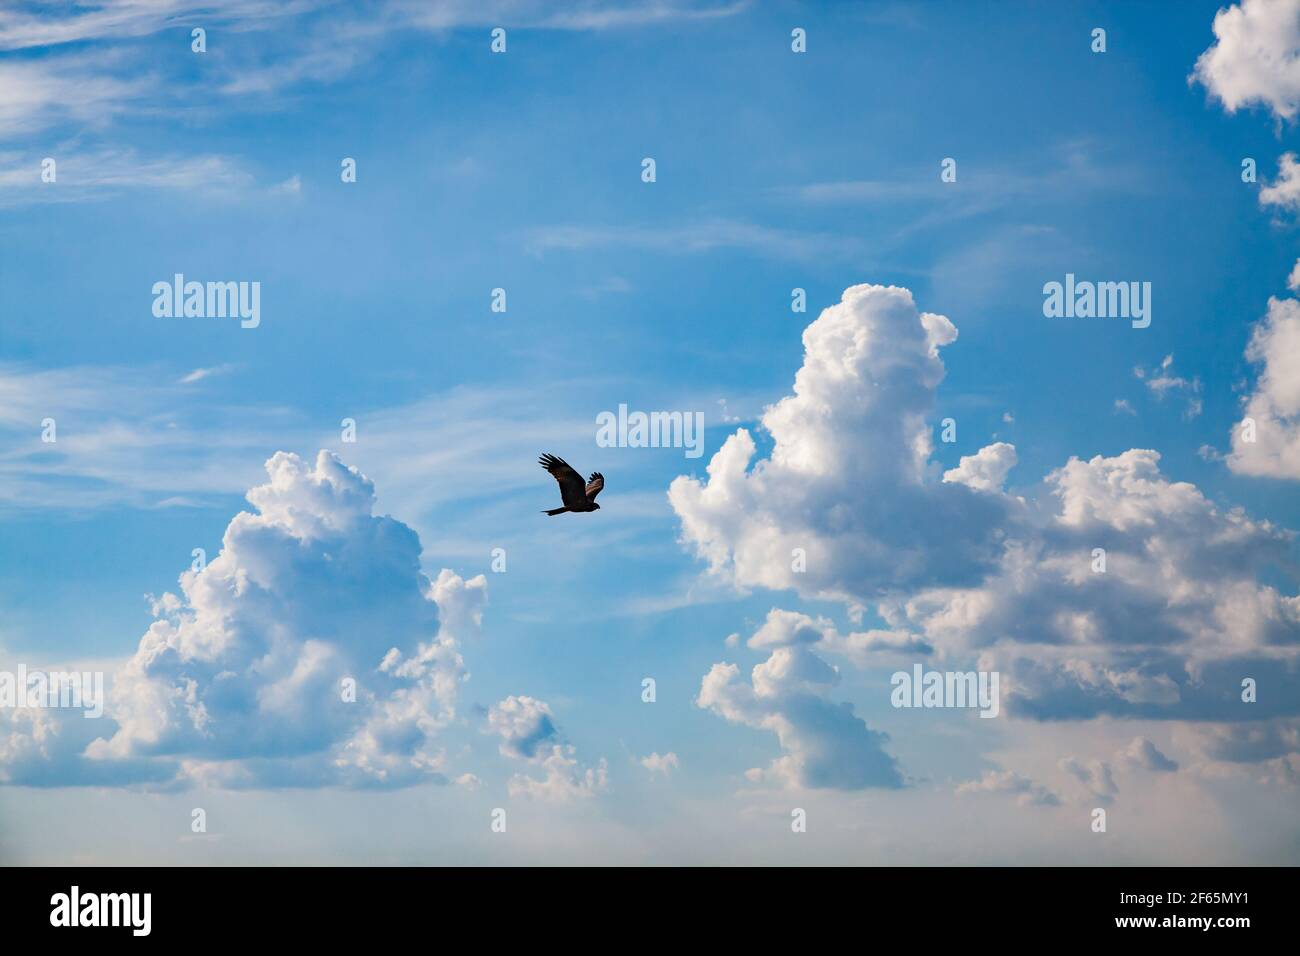 Der Falke fliegt auf blauem Himmel mit Wolken Hintergrund. Kasachstan, Region Almaty. Stockfoto